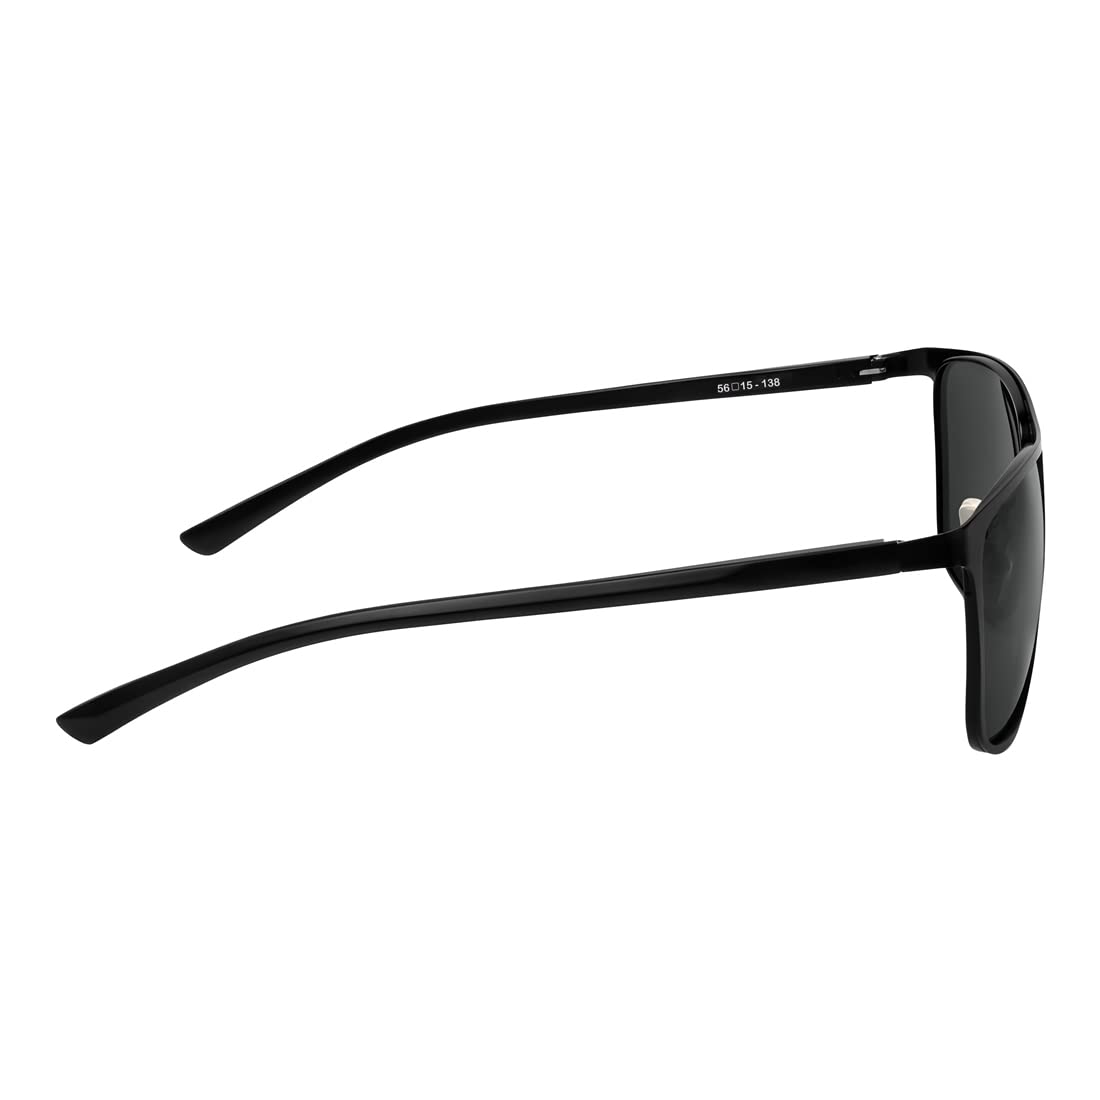 IMPLICIT Polarized Rectangular Sunglasses for Men & Women | 100% UV Protected | Aluminum Material